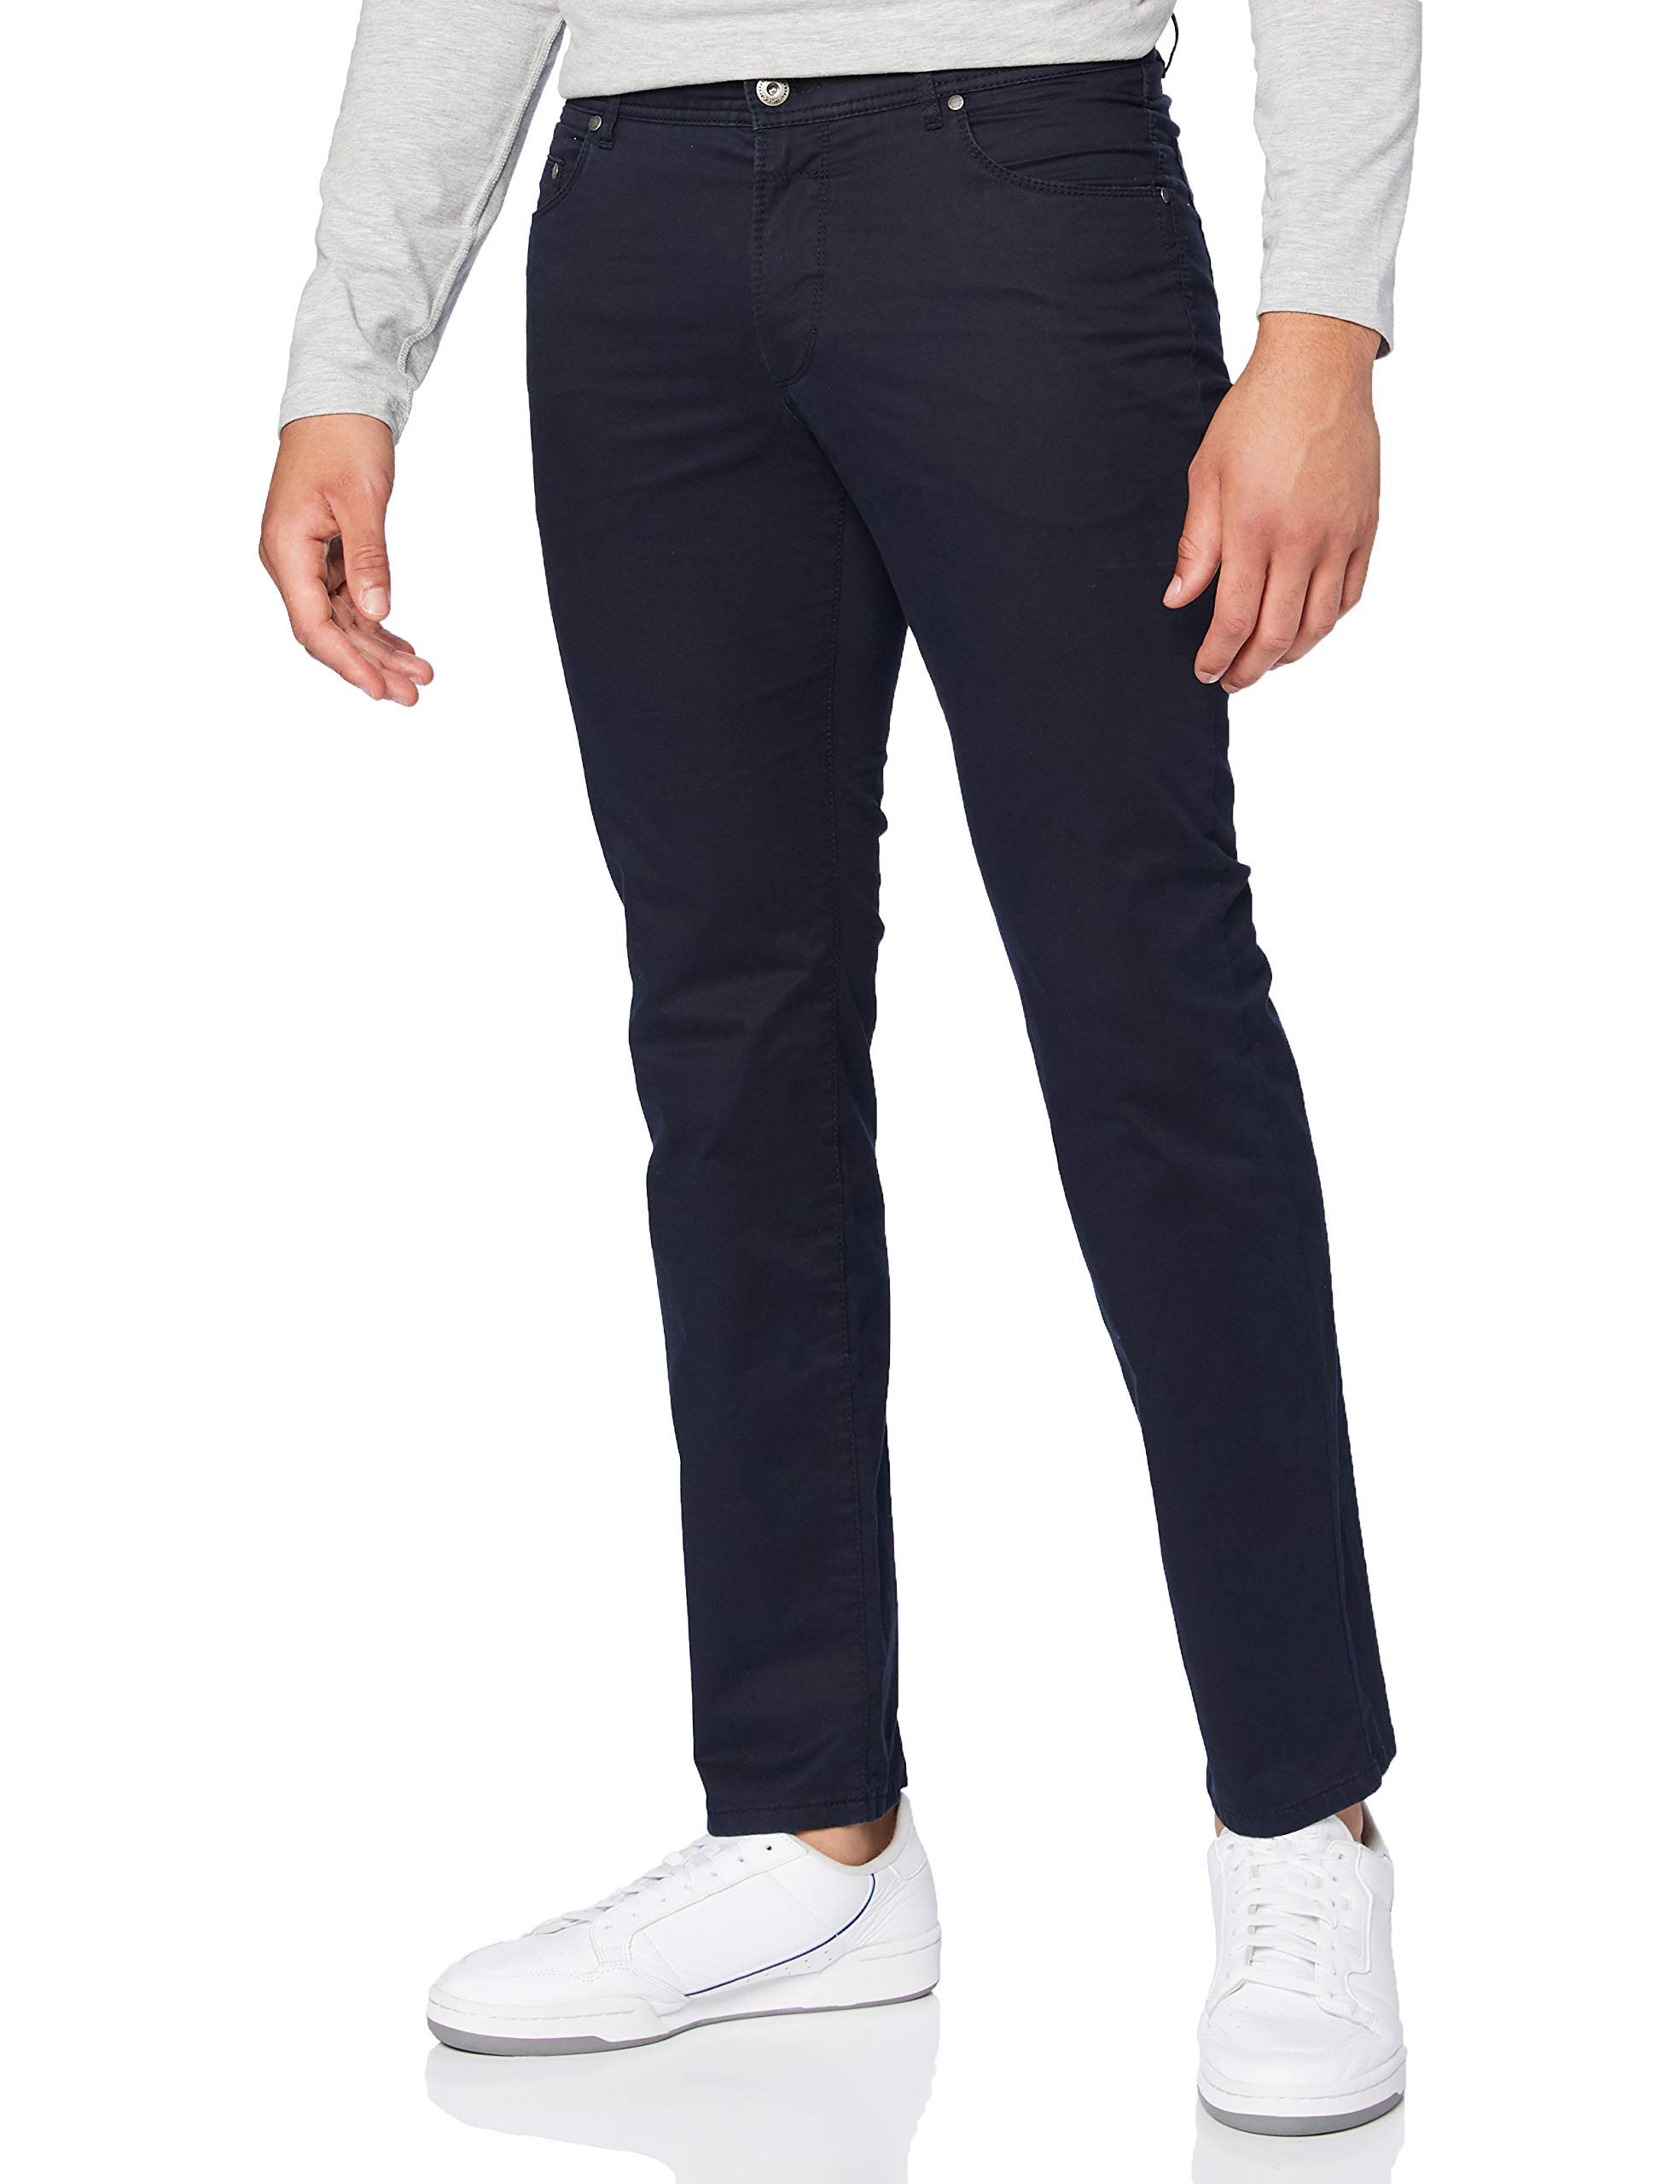 EUREX by BRAX Herren Regular Fit Jeans Hose Style PEP-s Five Pocket Baumwolle, Blau, PERMA BLUE, 26U